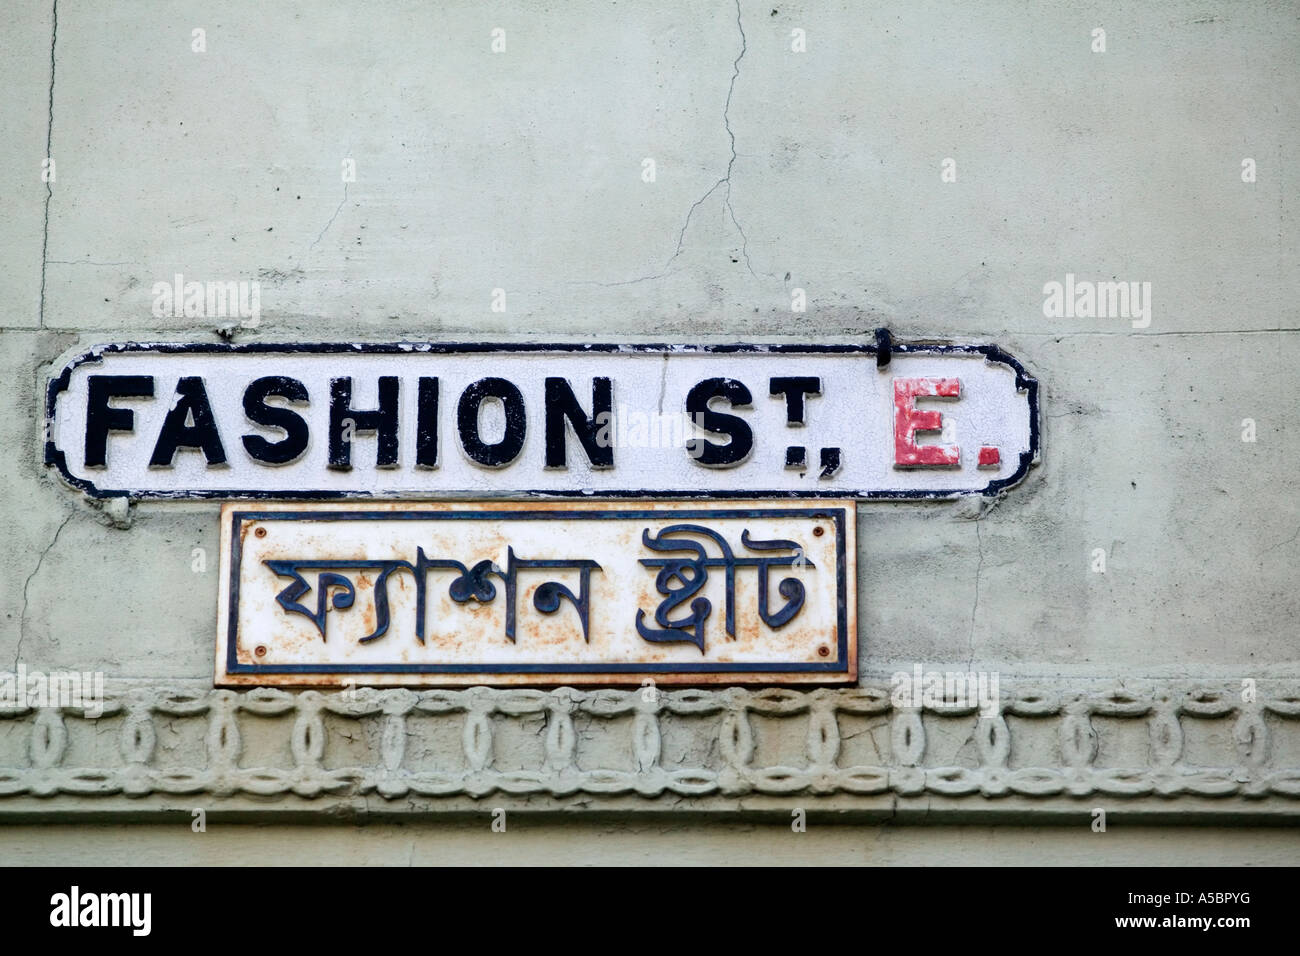 Fashion Street Road Sign in Brick Lane de Londres avec lettrage Bengali Banque D'Images